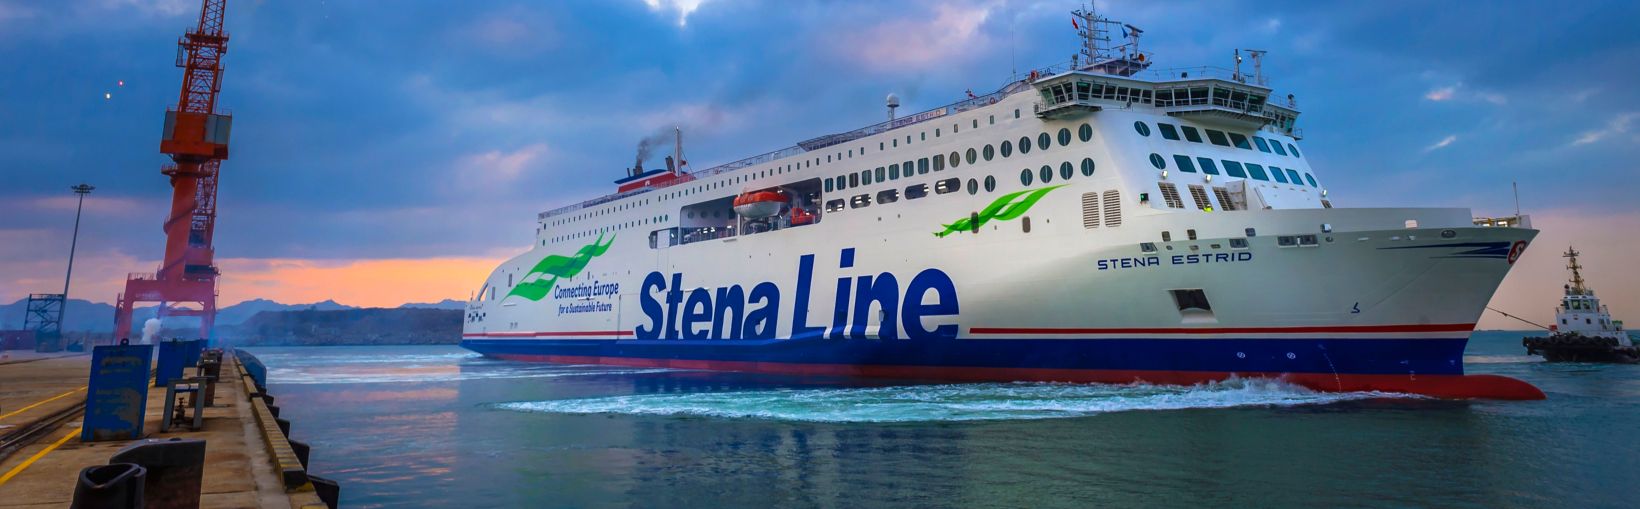 Færgen Stena Estrid forlader havnen